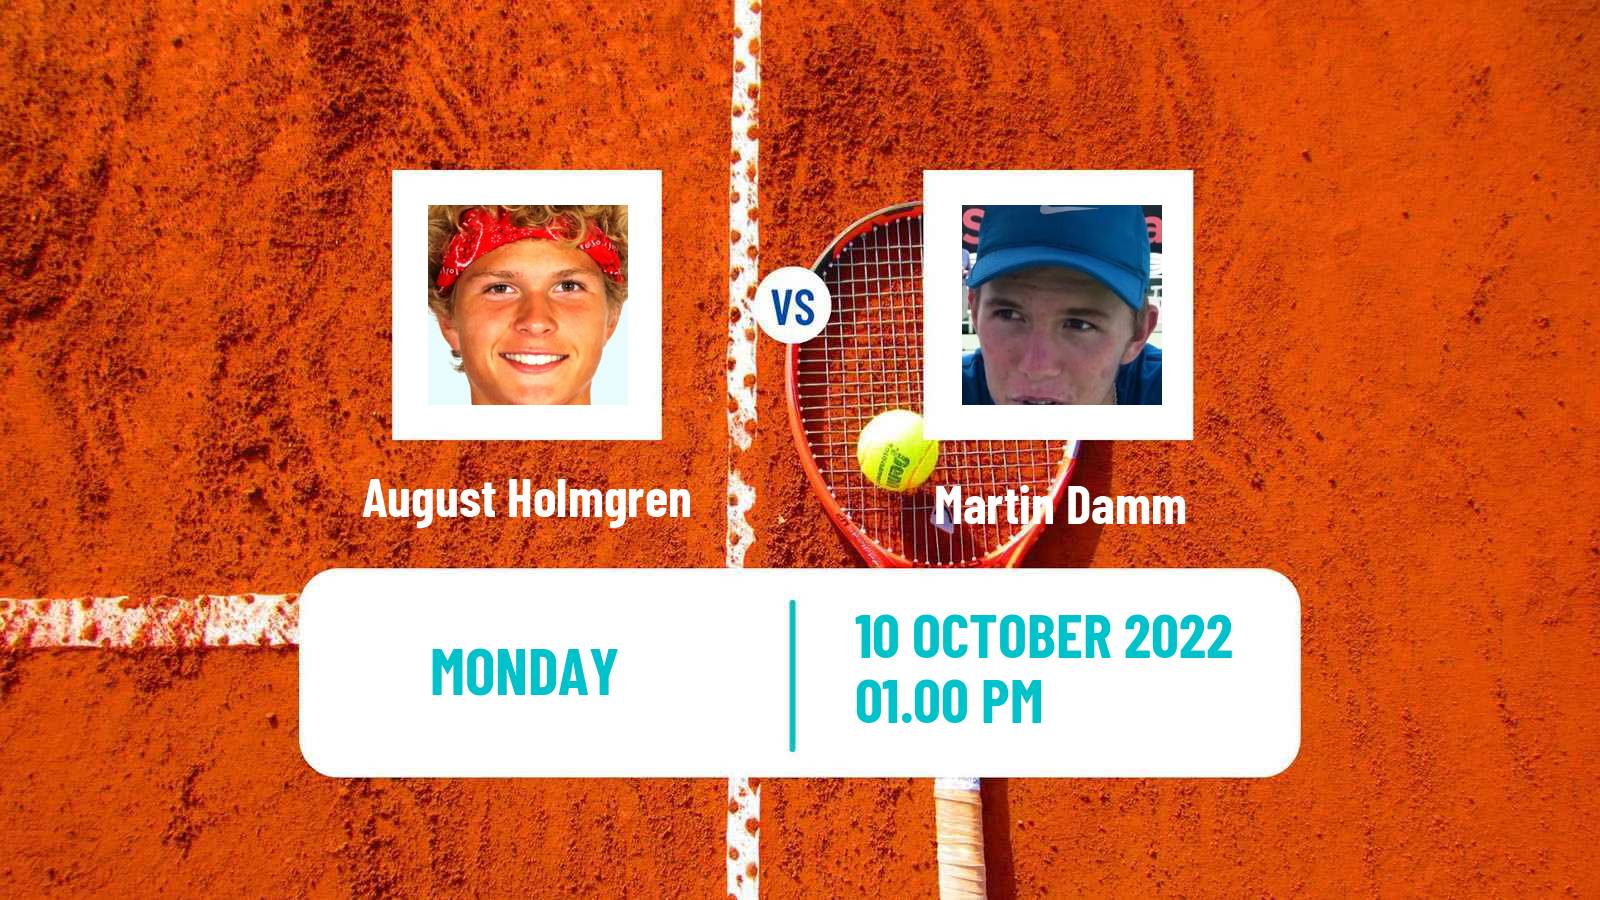 Tennis ATP Challenger August Holmgren - Martin Damm